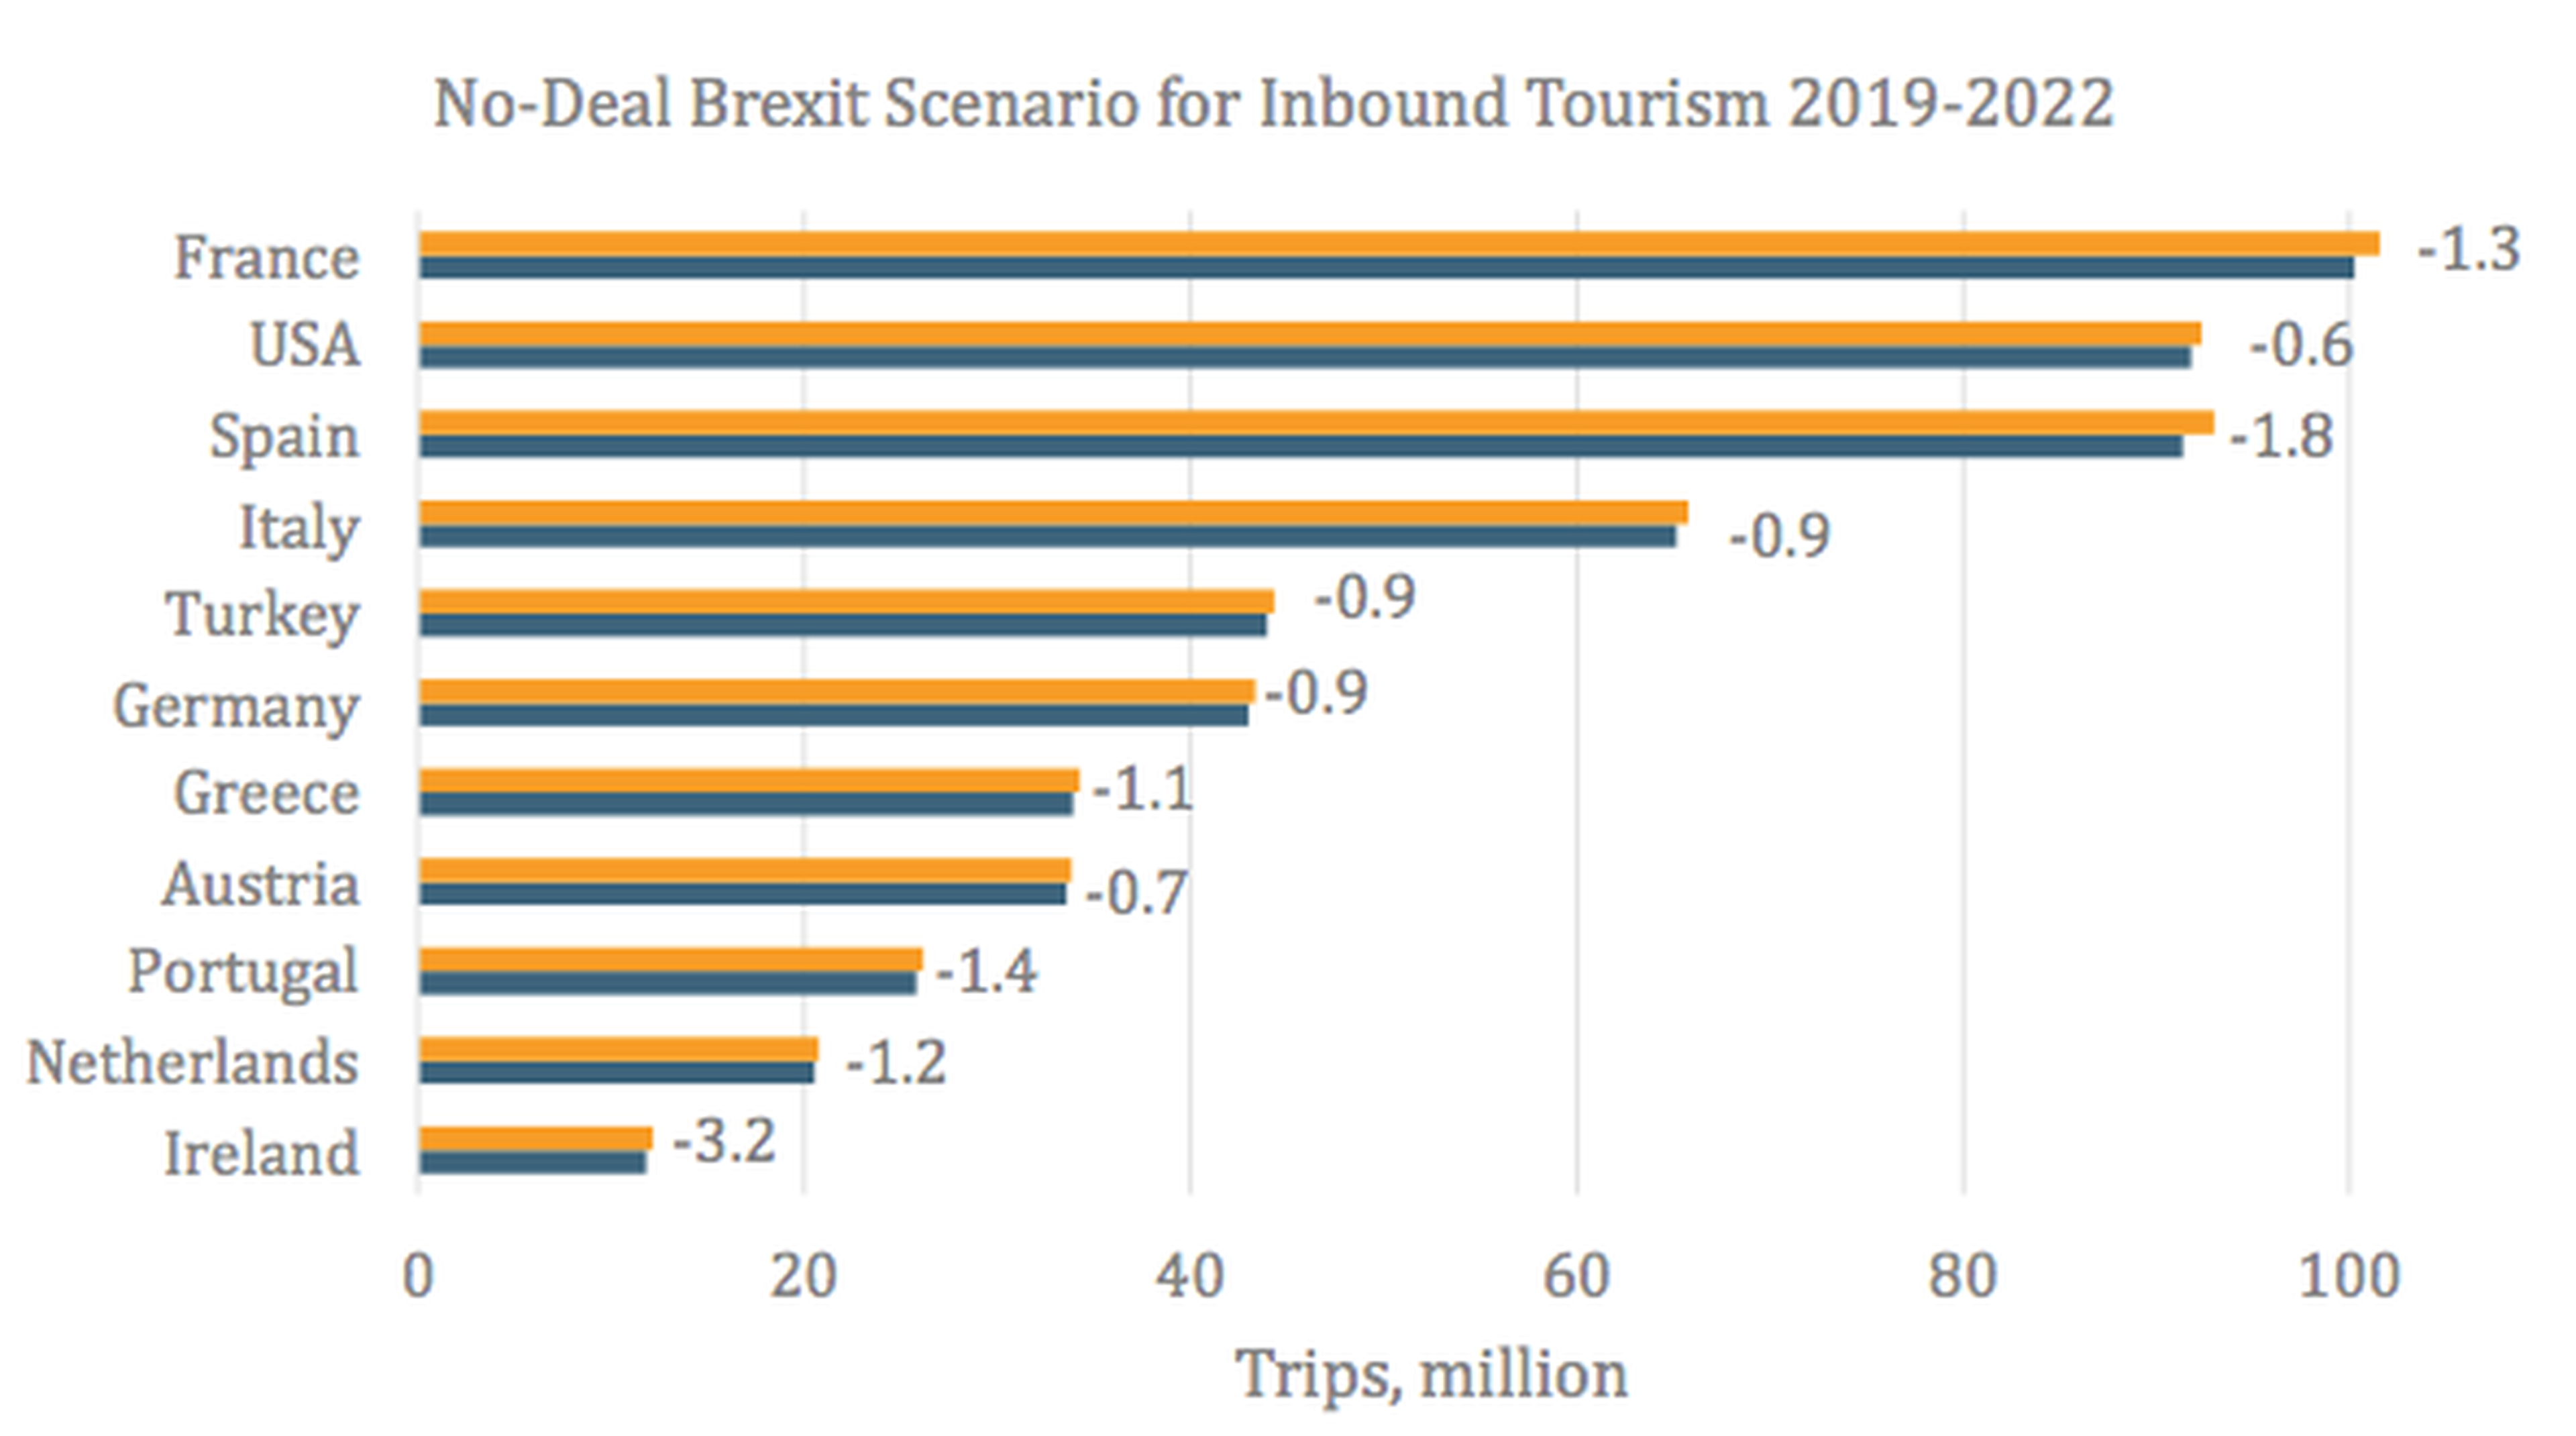 Cuanto caerá la llegada de turistas británicos en caso de que se produzca un Brexit sin acuerdo